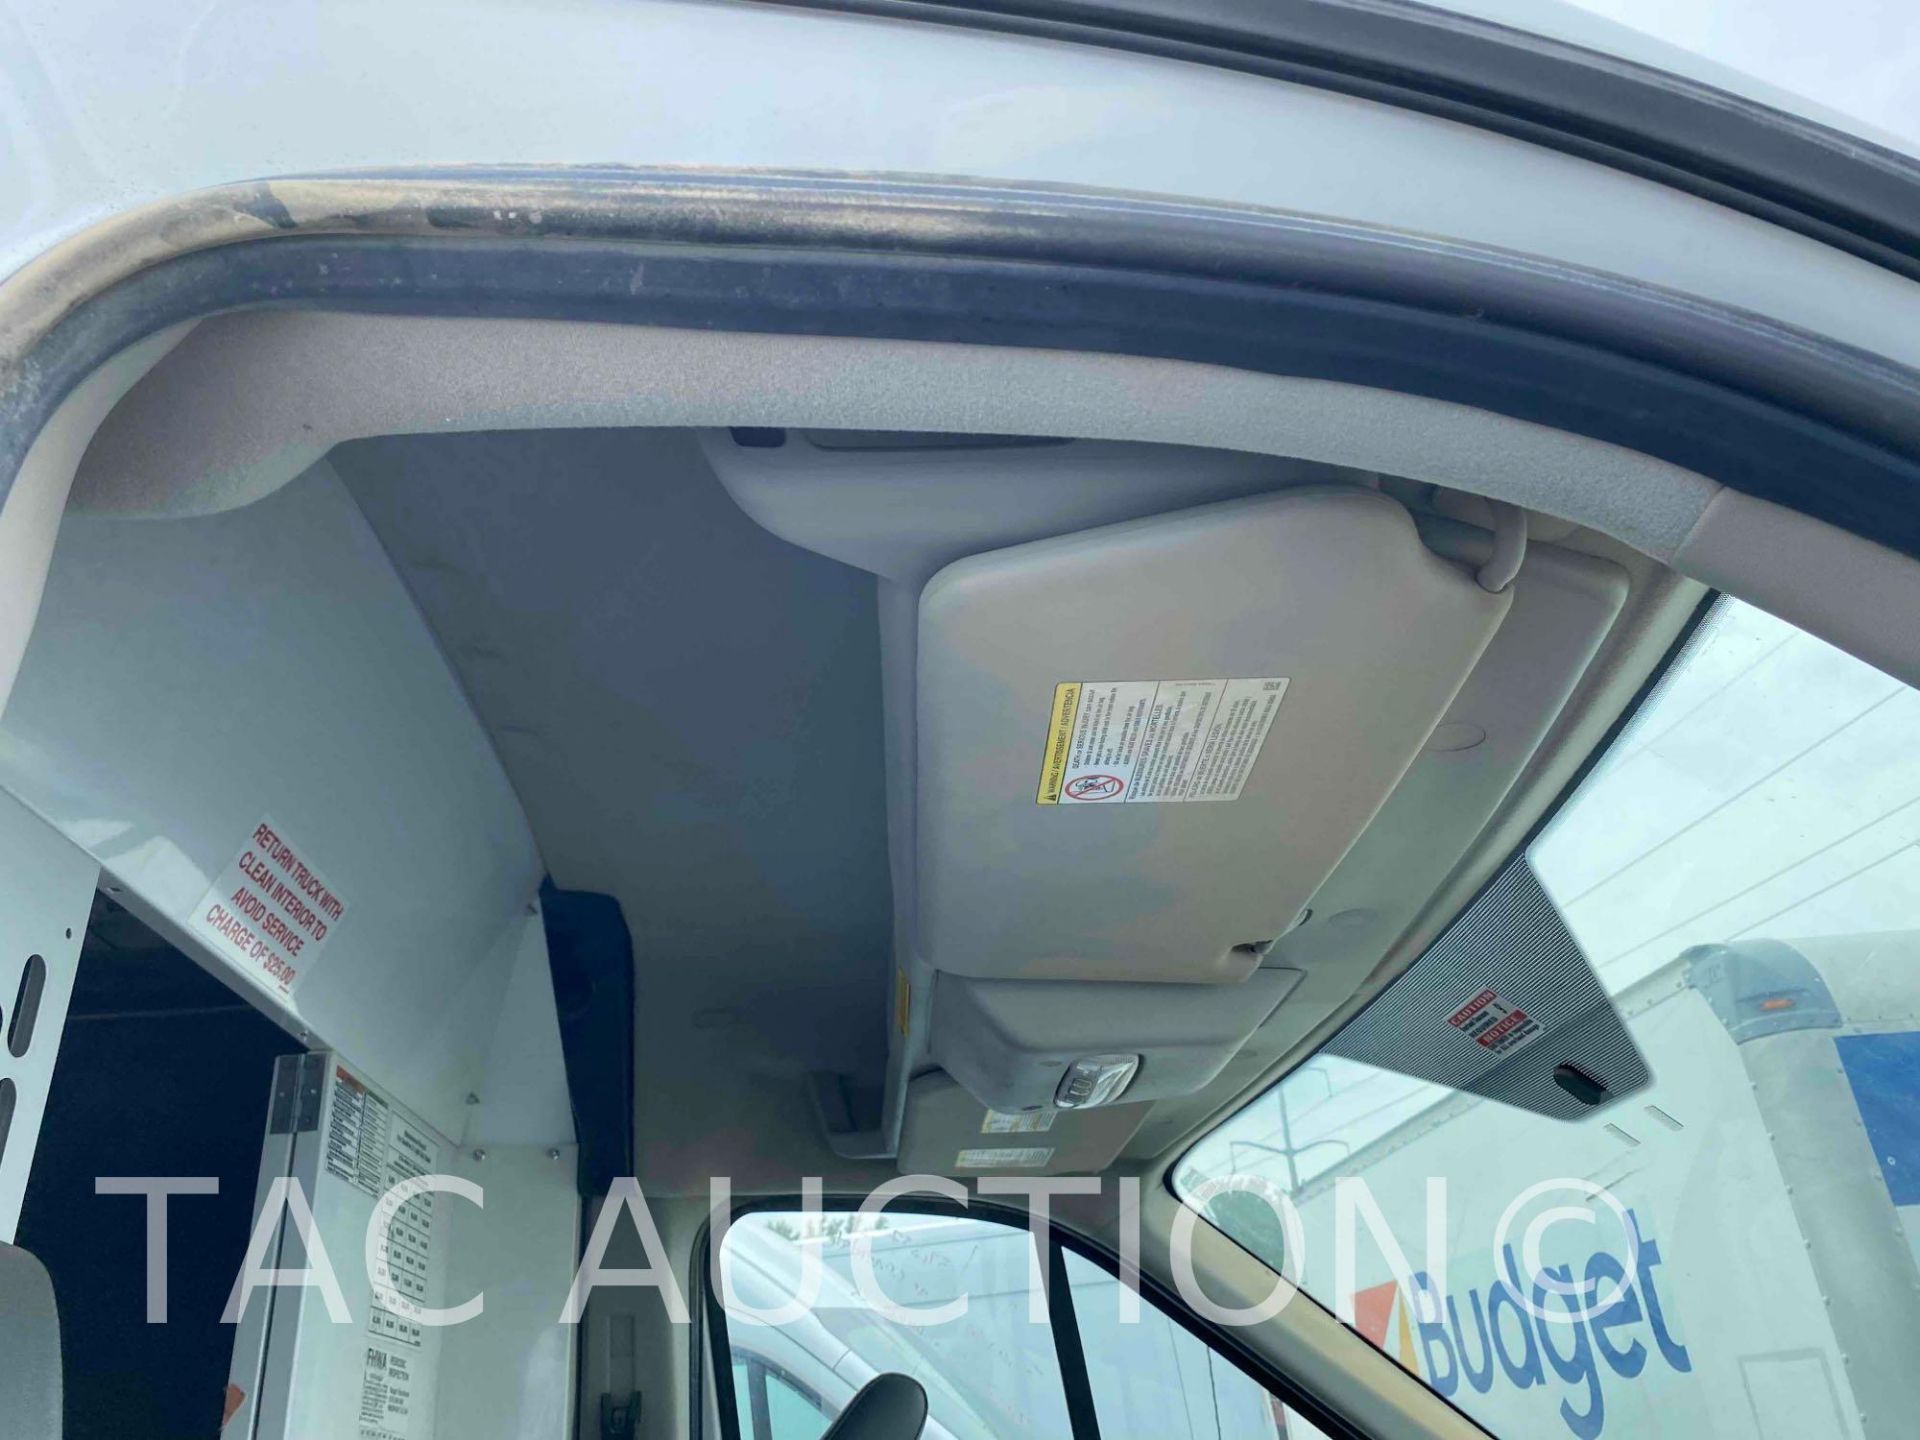 2019 Ford Transit 150 Cargo Van - Image 21 of 43